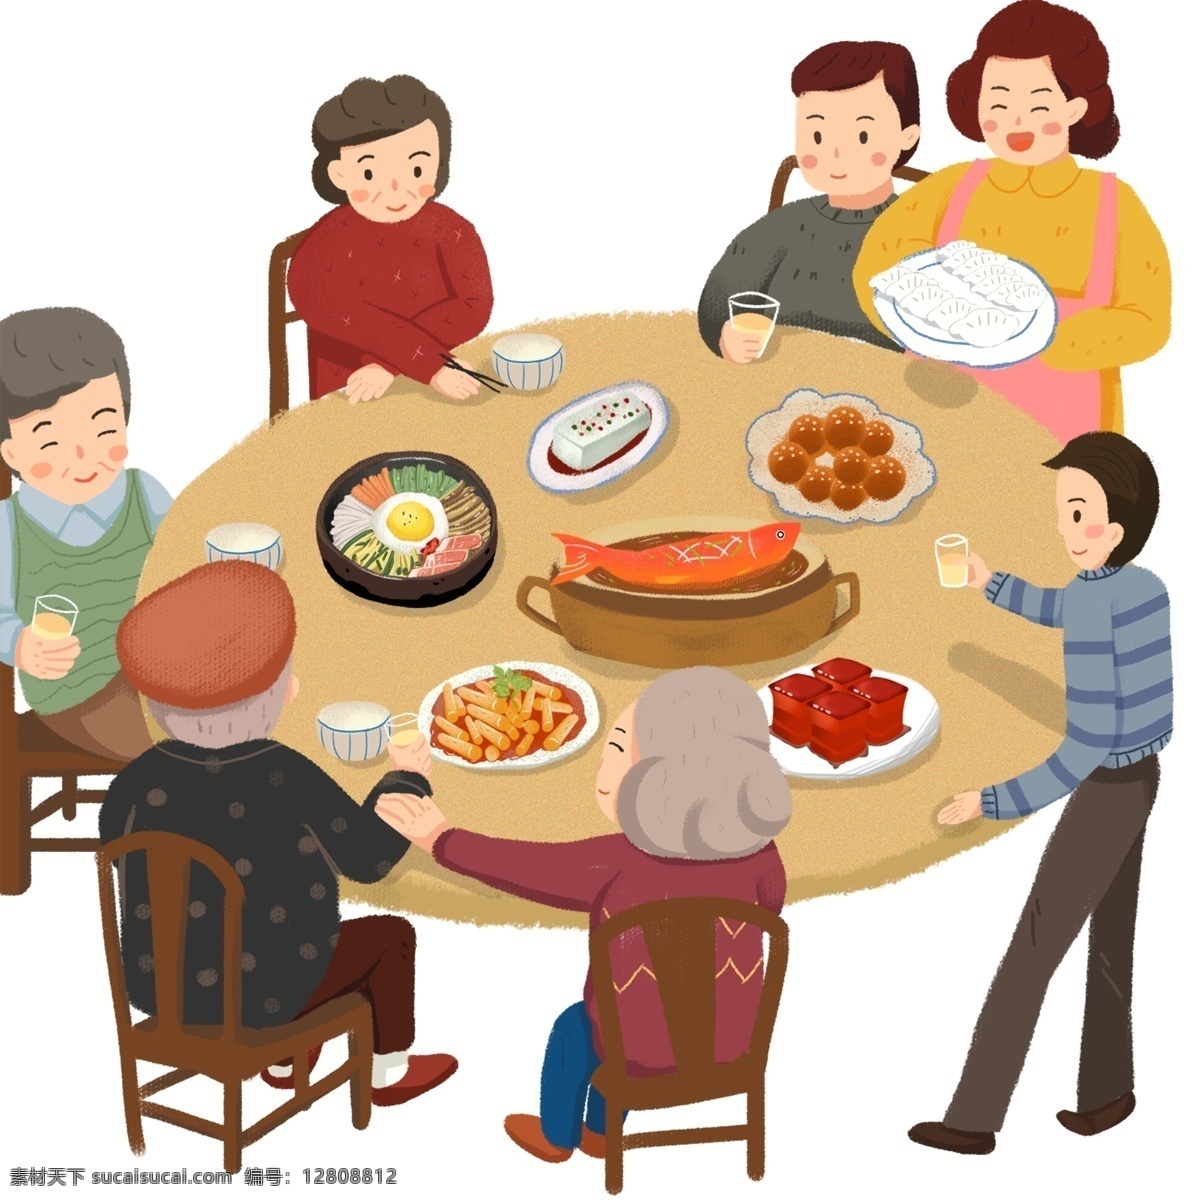 卡通 手绘 年夜饭 小年夜 团圆饭 除夕 一家人 吃饭啦 过年 聚会 家庭聚餐